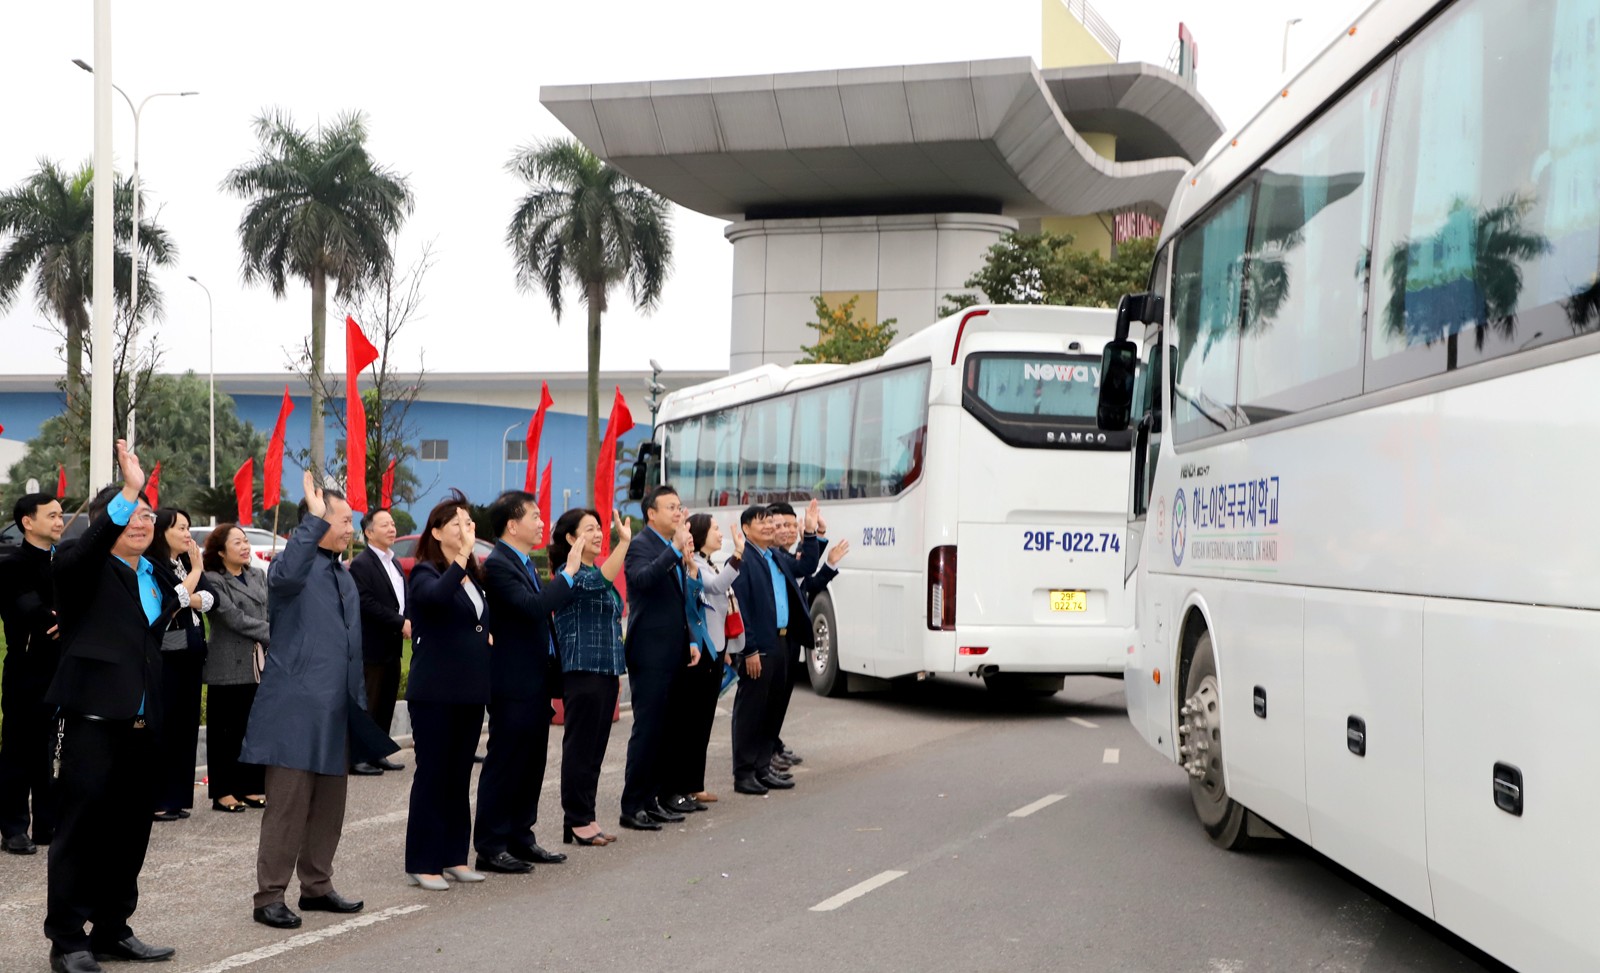 ĐANG TRỰC TUYẾN: Những chuyến xe ấm tình Công đoàn đưa công nhân về quê đón Tết